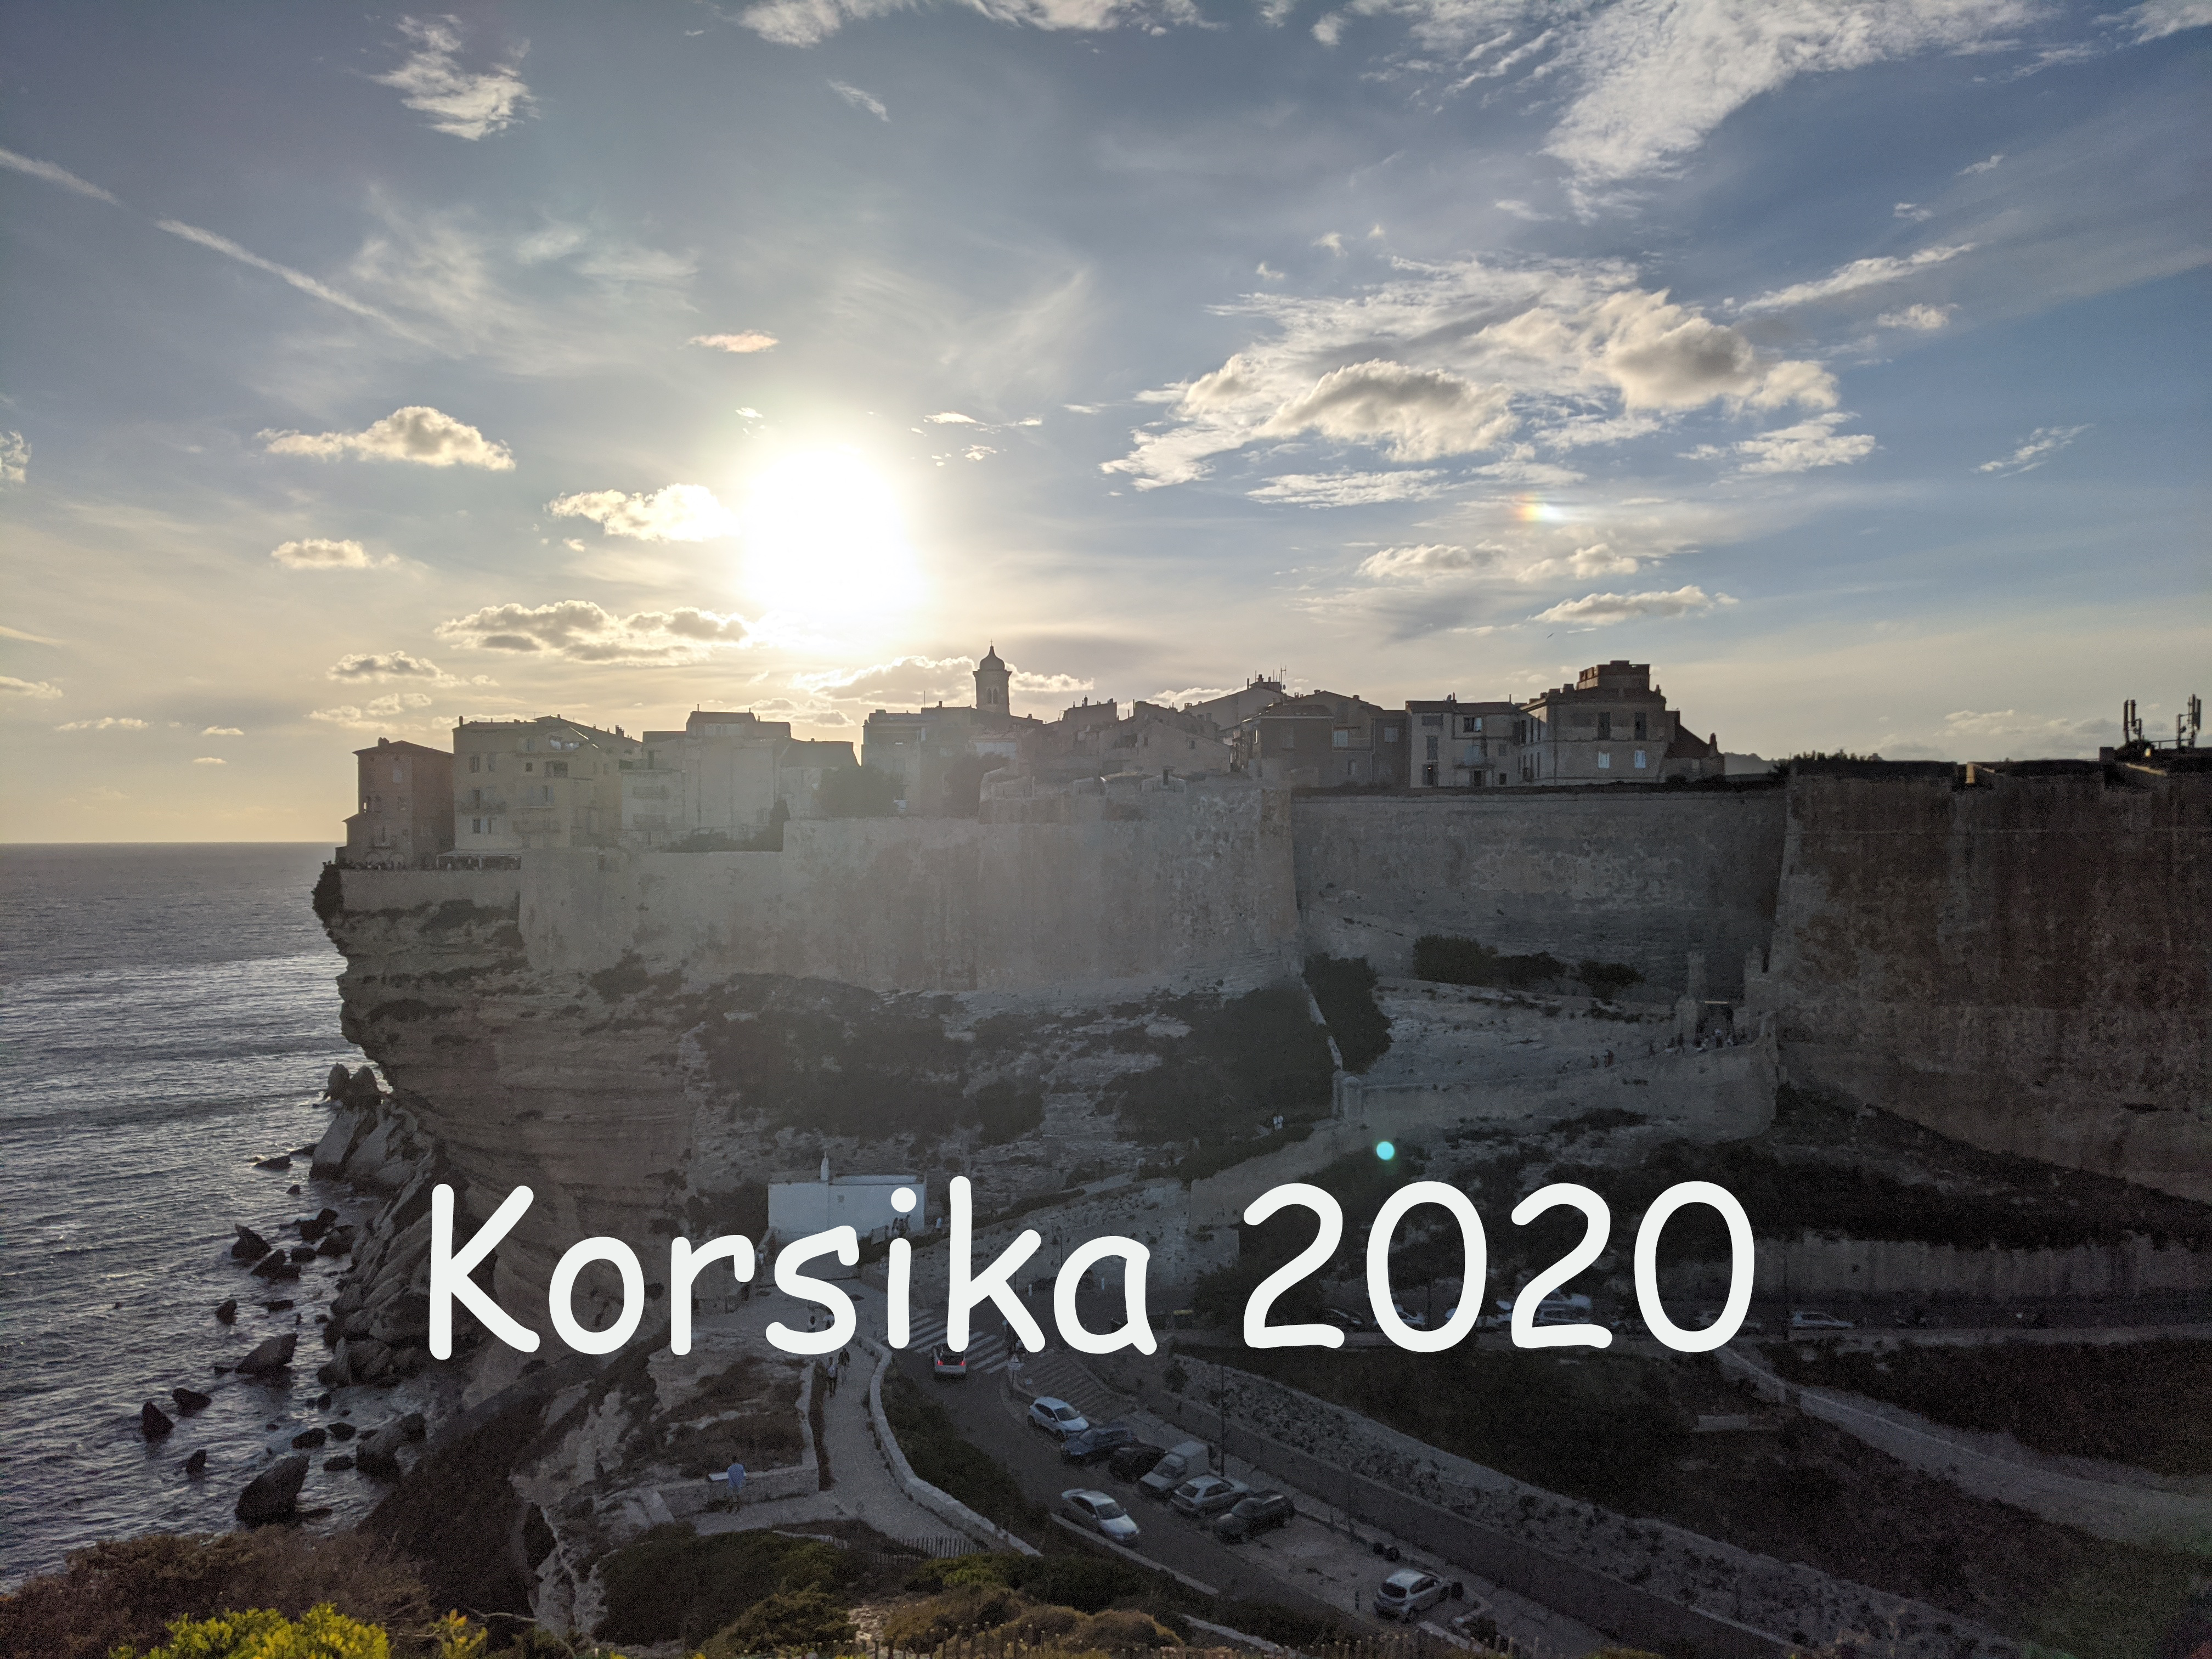 Korsika 2020